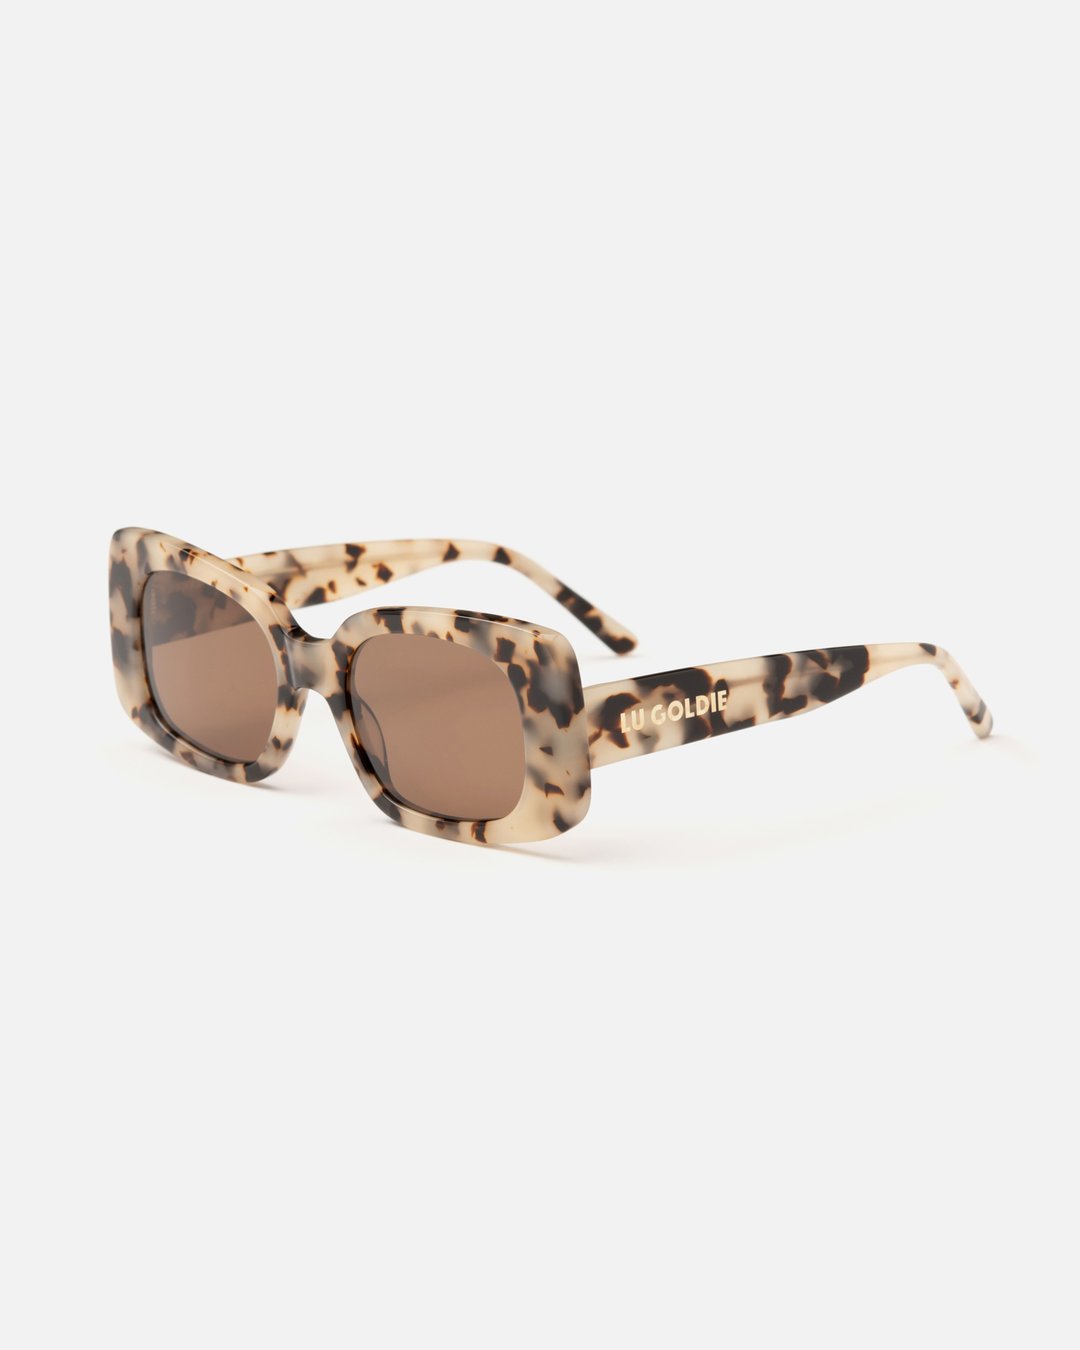 Coco Sunglasses